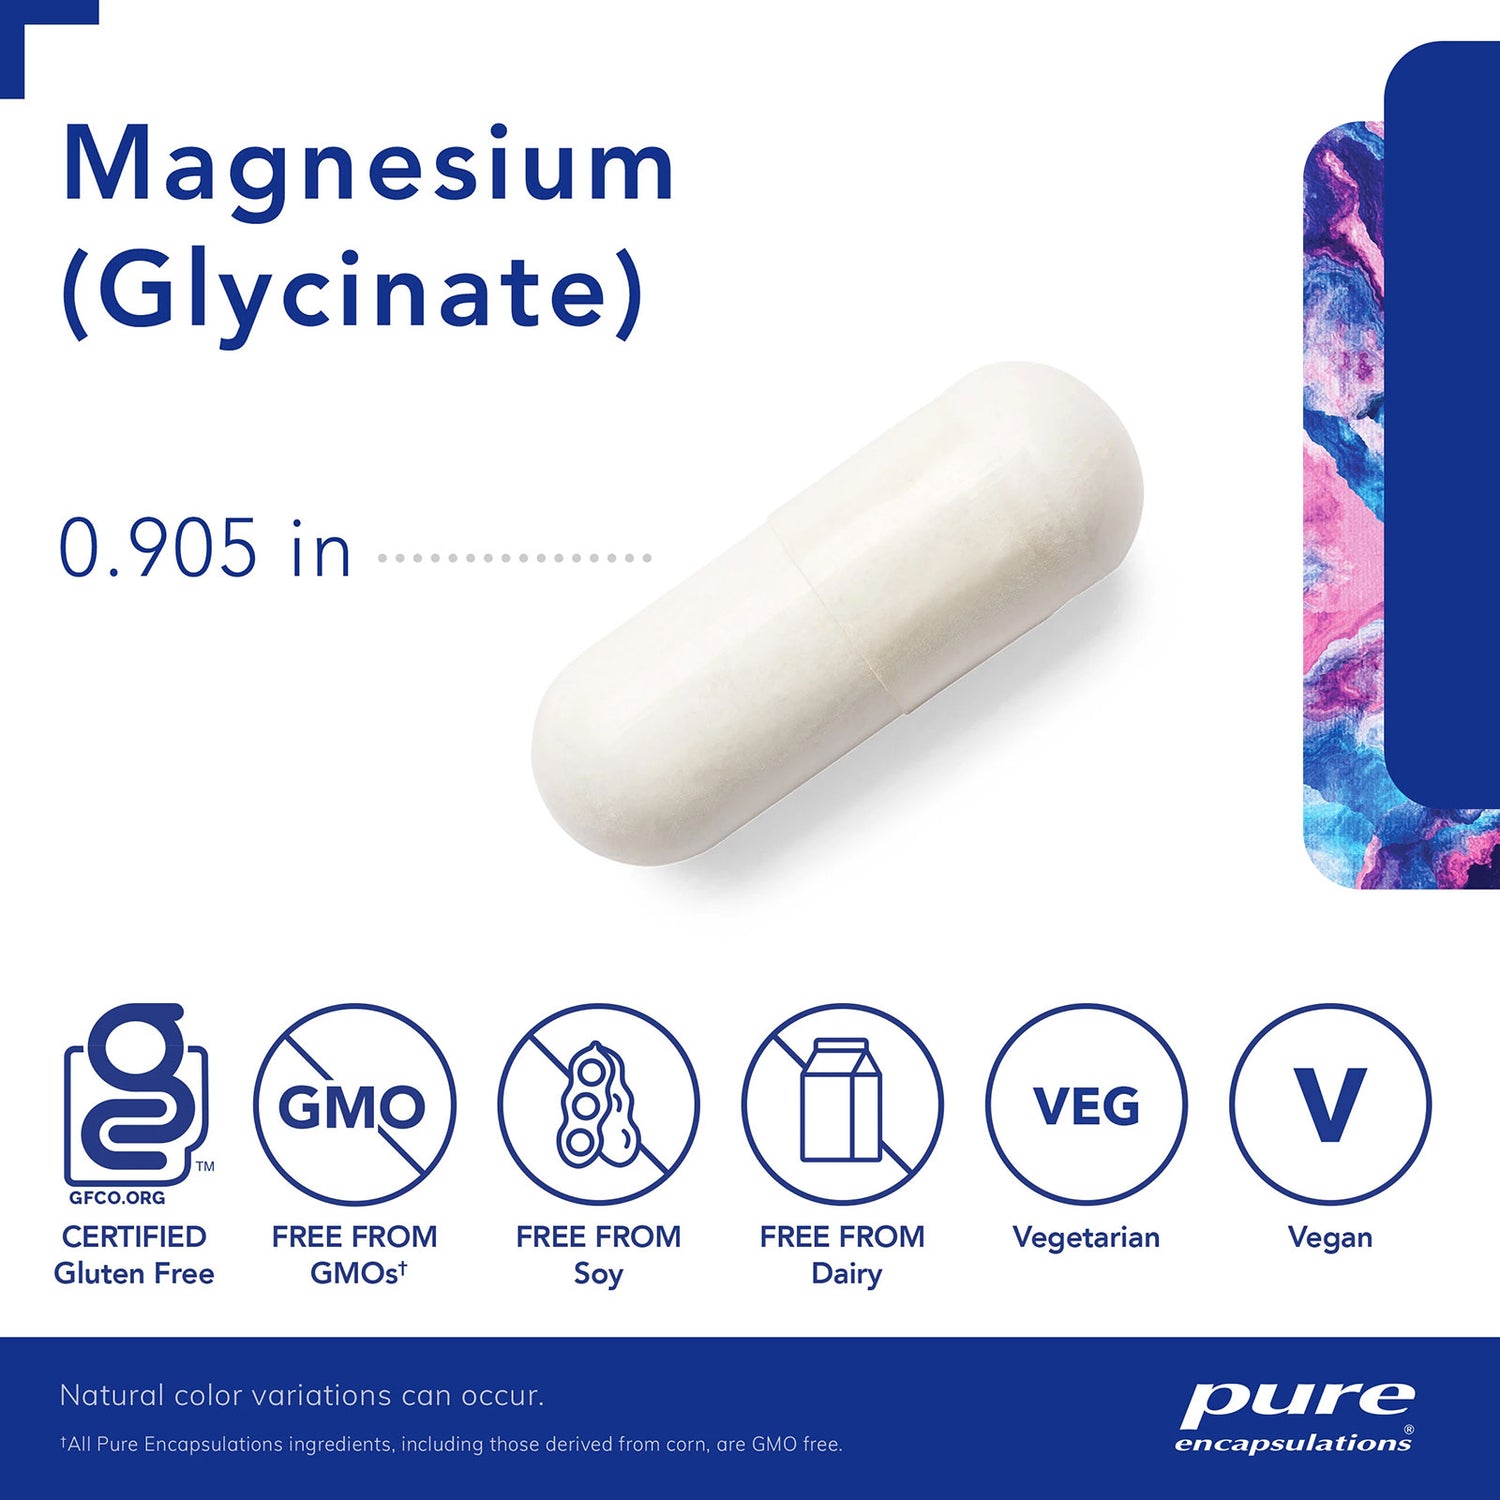 Pure Encapsulations Magnesium (glycinate)